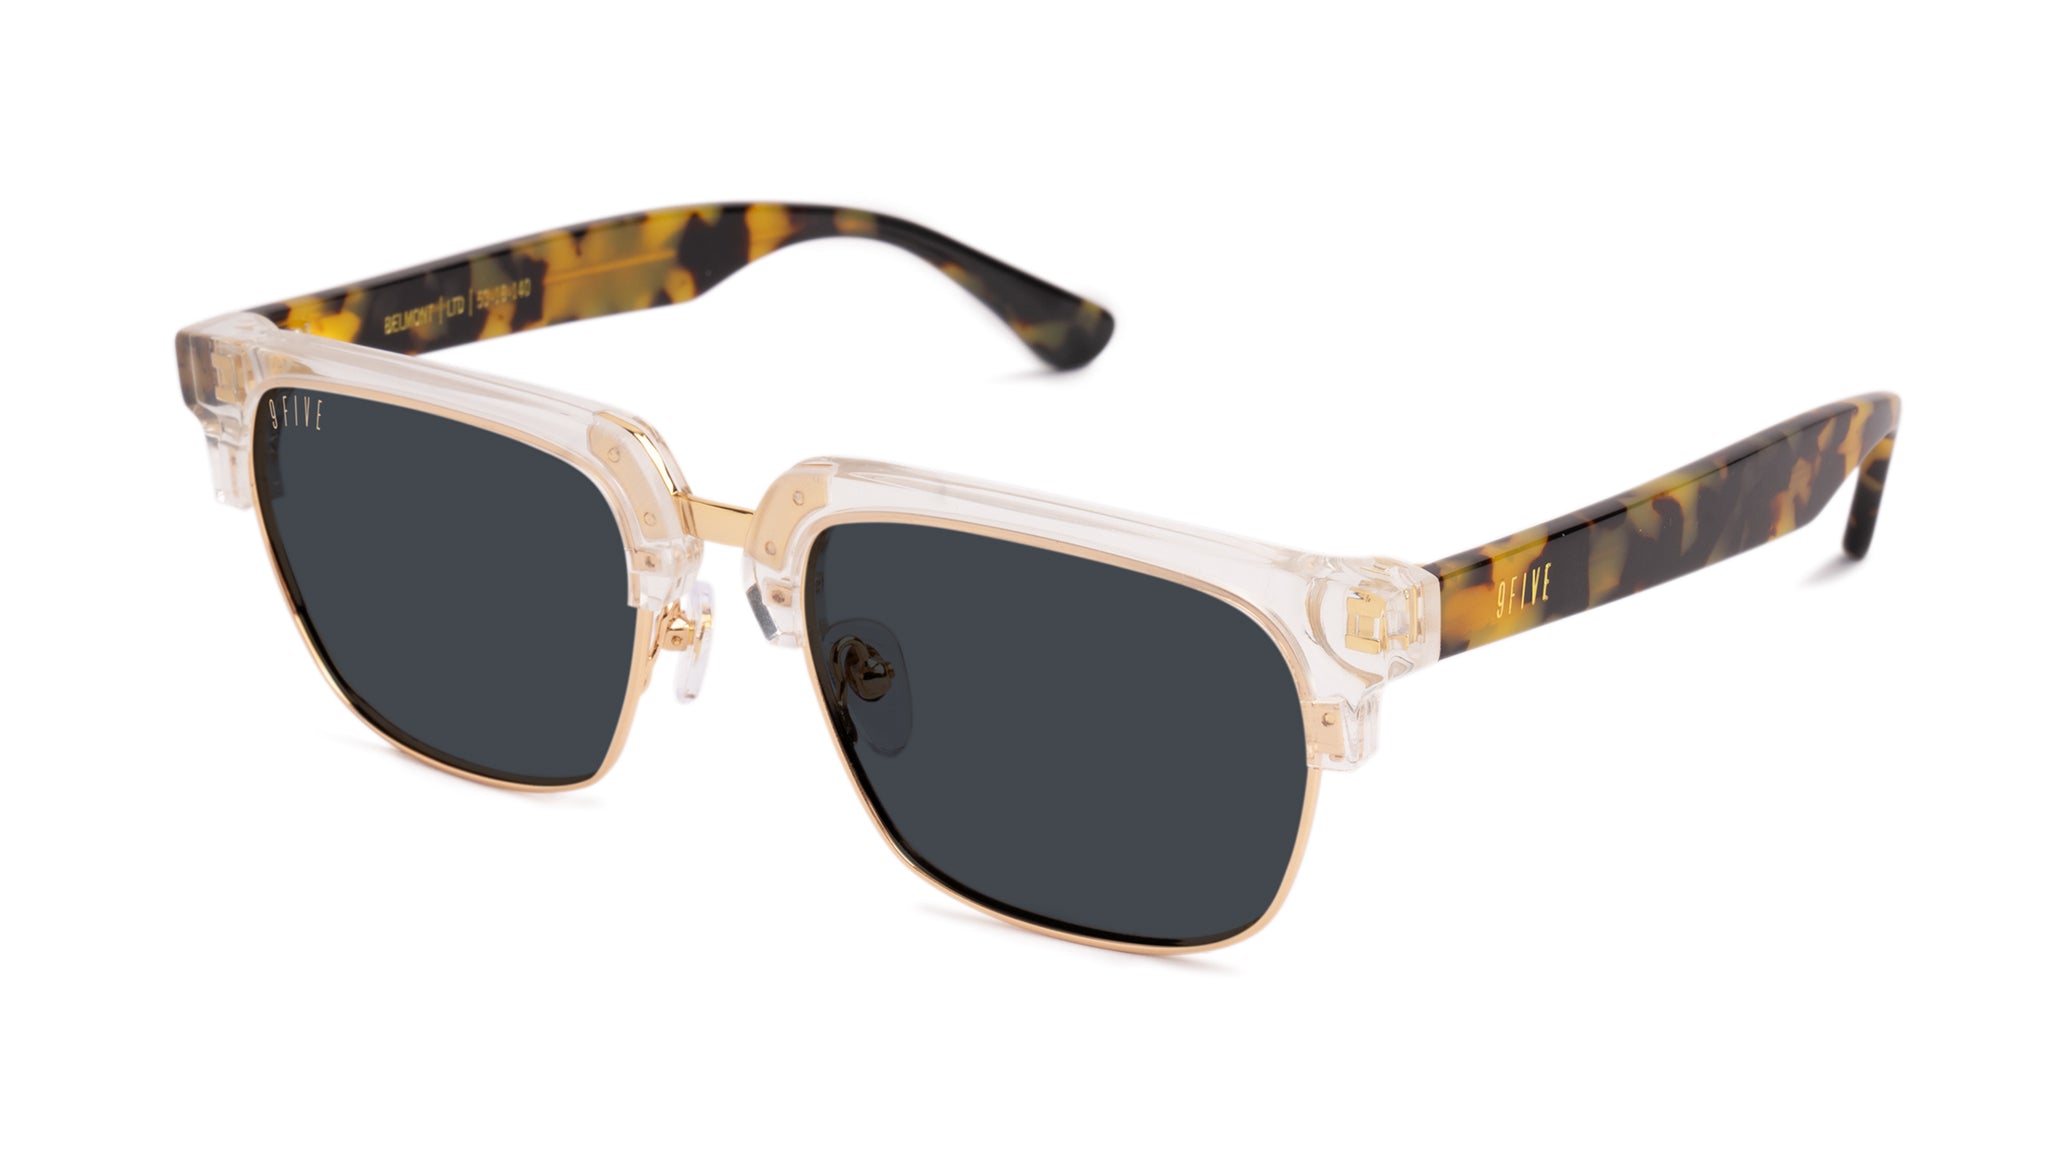 9FIVE Belmont Oasis Sunglasses Rx